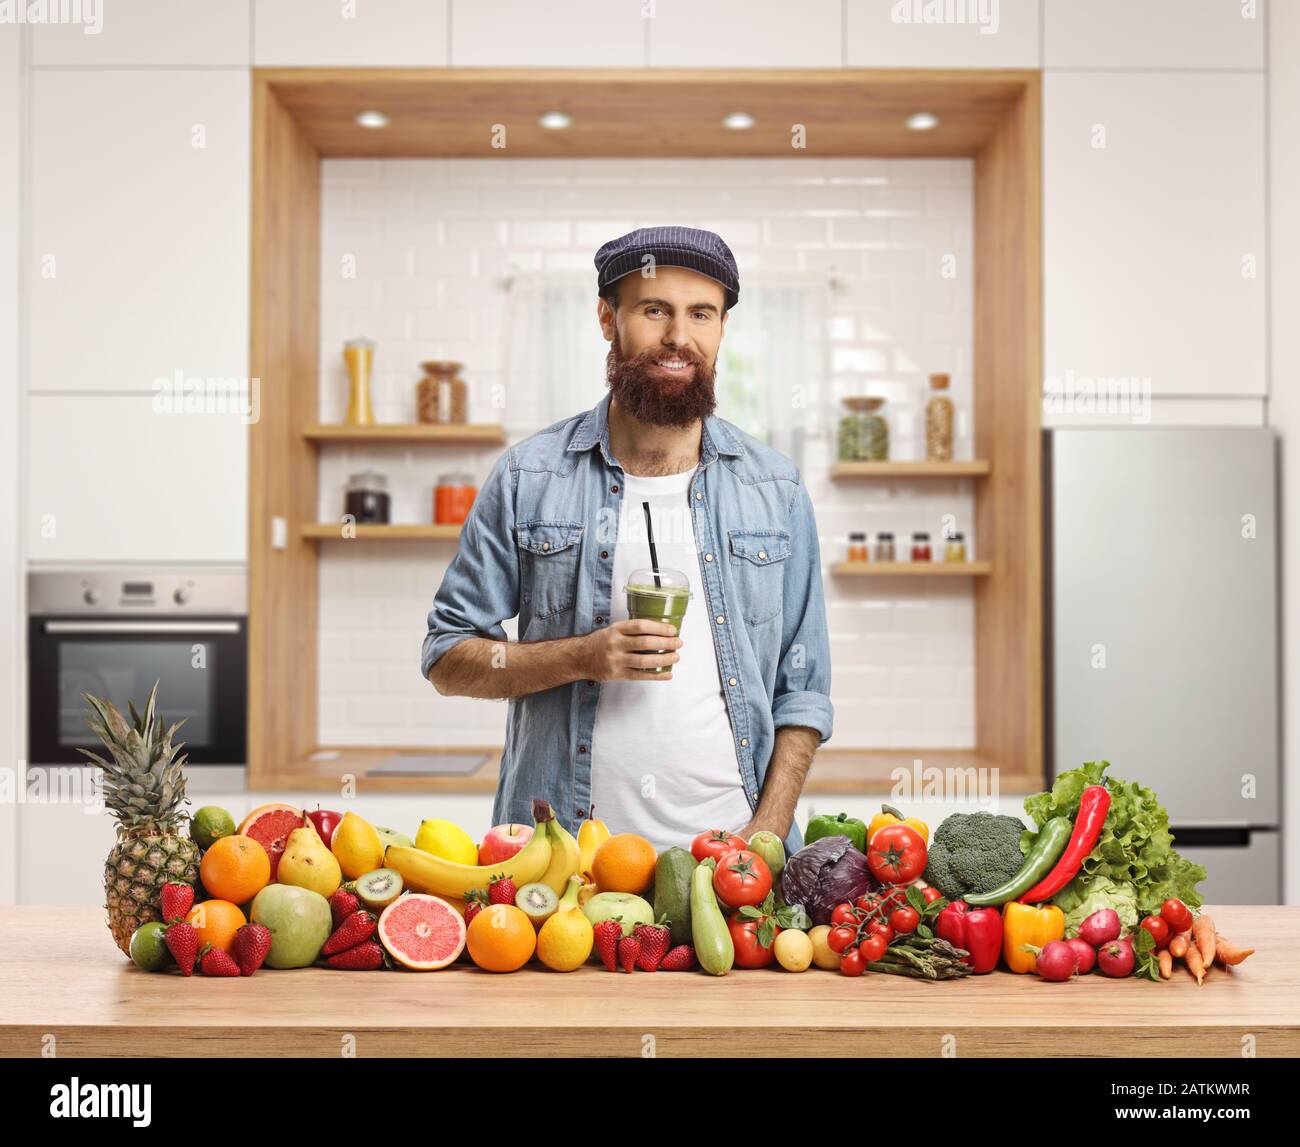 Legerer junger Mann mit grünem Smoothie in einer Küche mit Obst und Gemüse Stockfoto